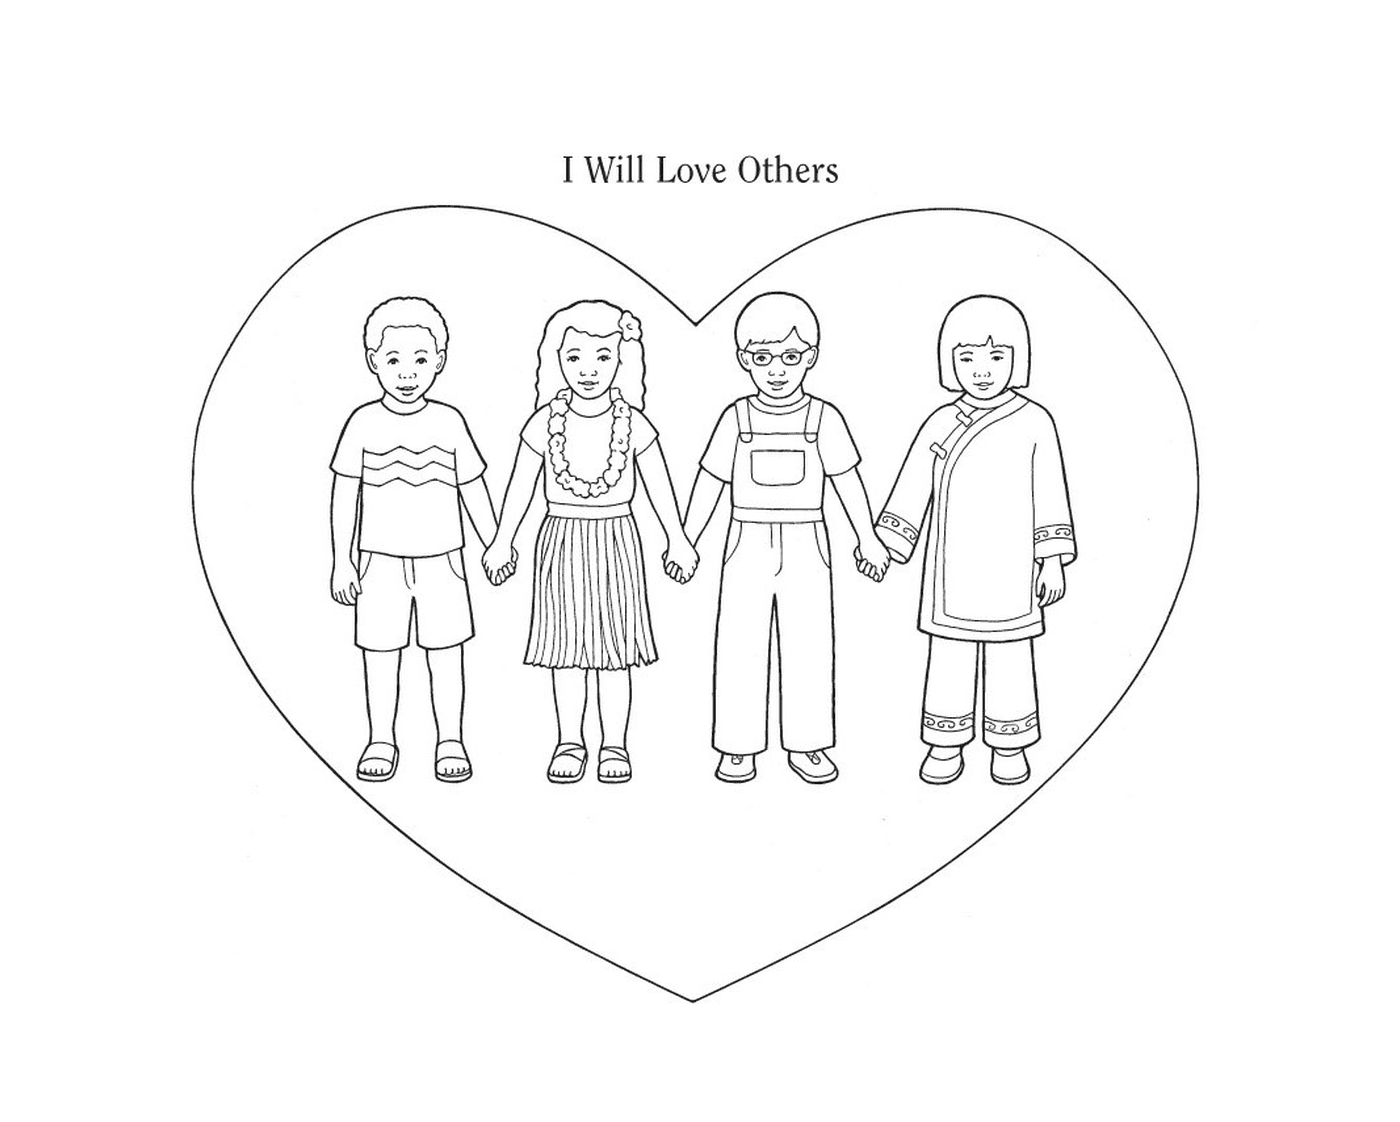   Quatre enfants se tenant la main devant un cœur 